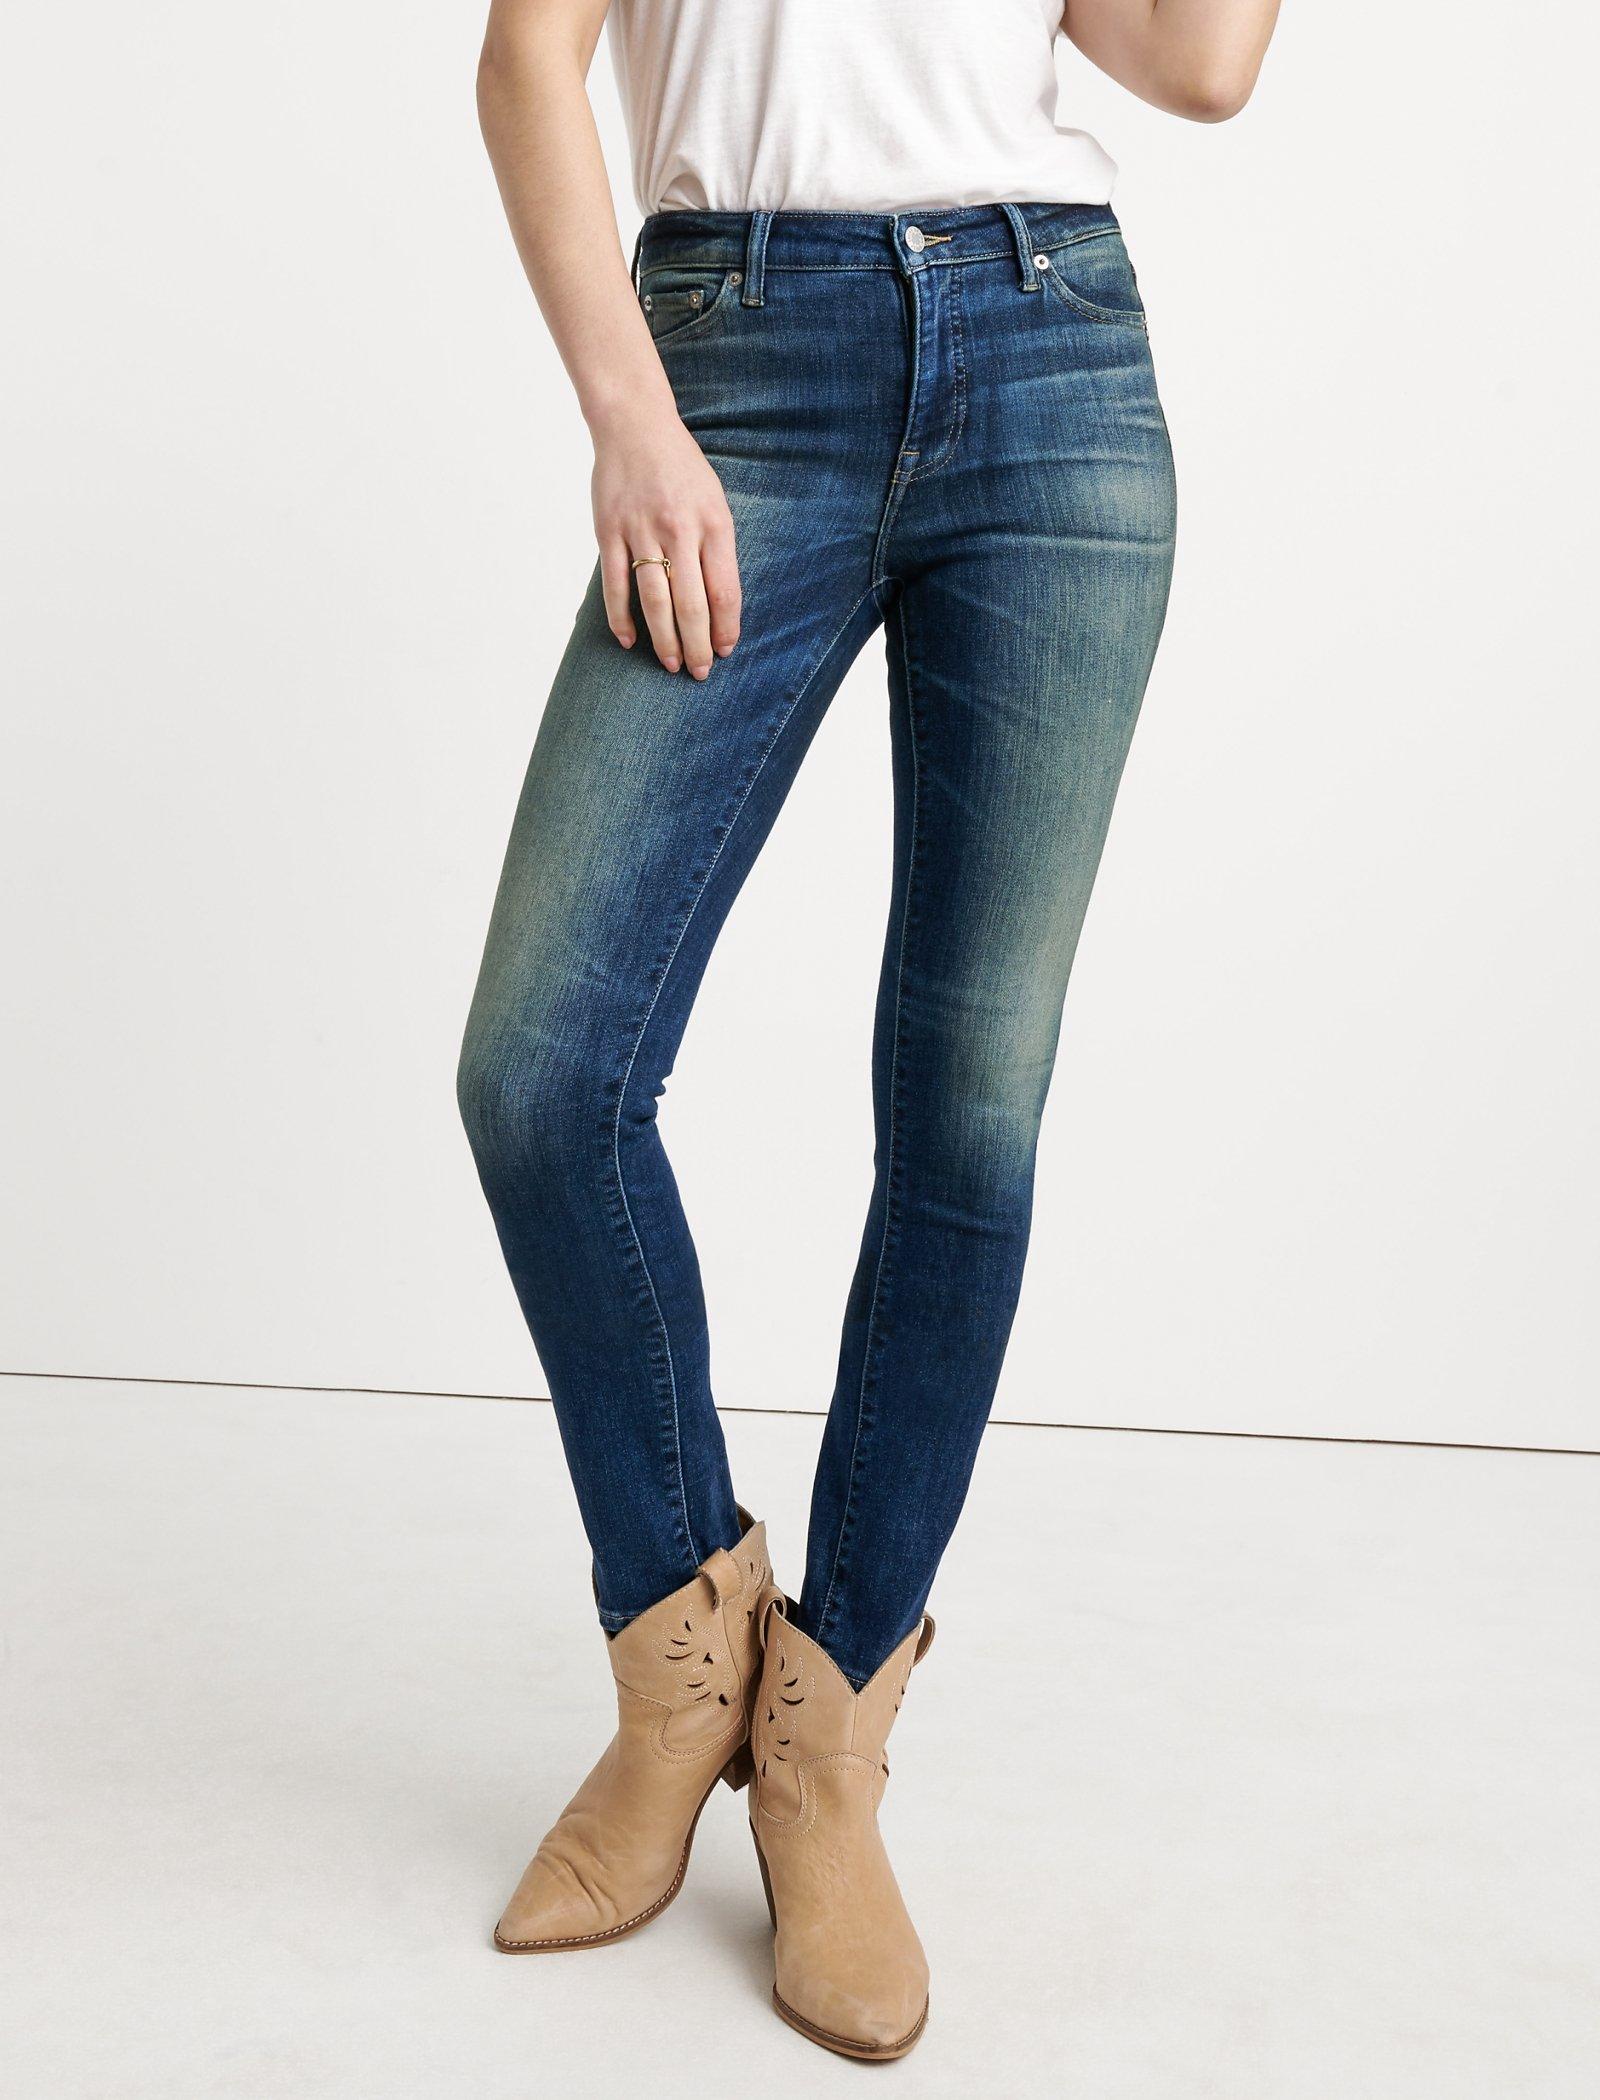 lucky hayden skinny jeans